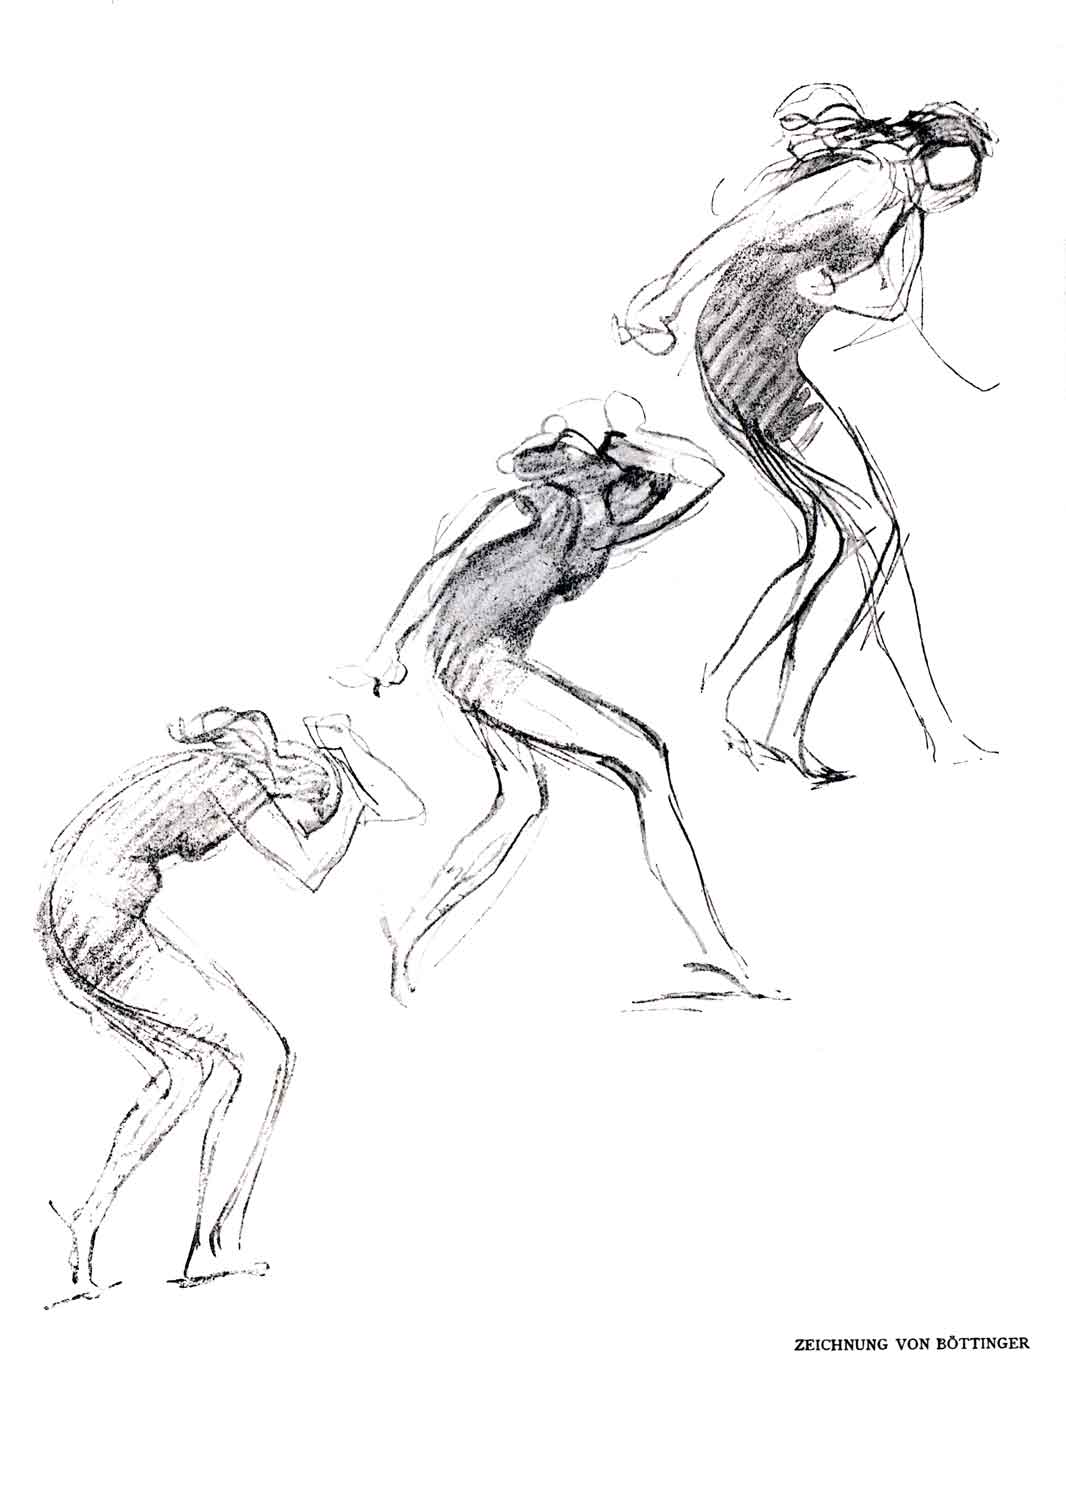 Zeichnung, schwarz-weiß: drei Figuren in tanzender Bewegung